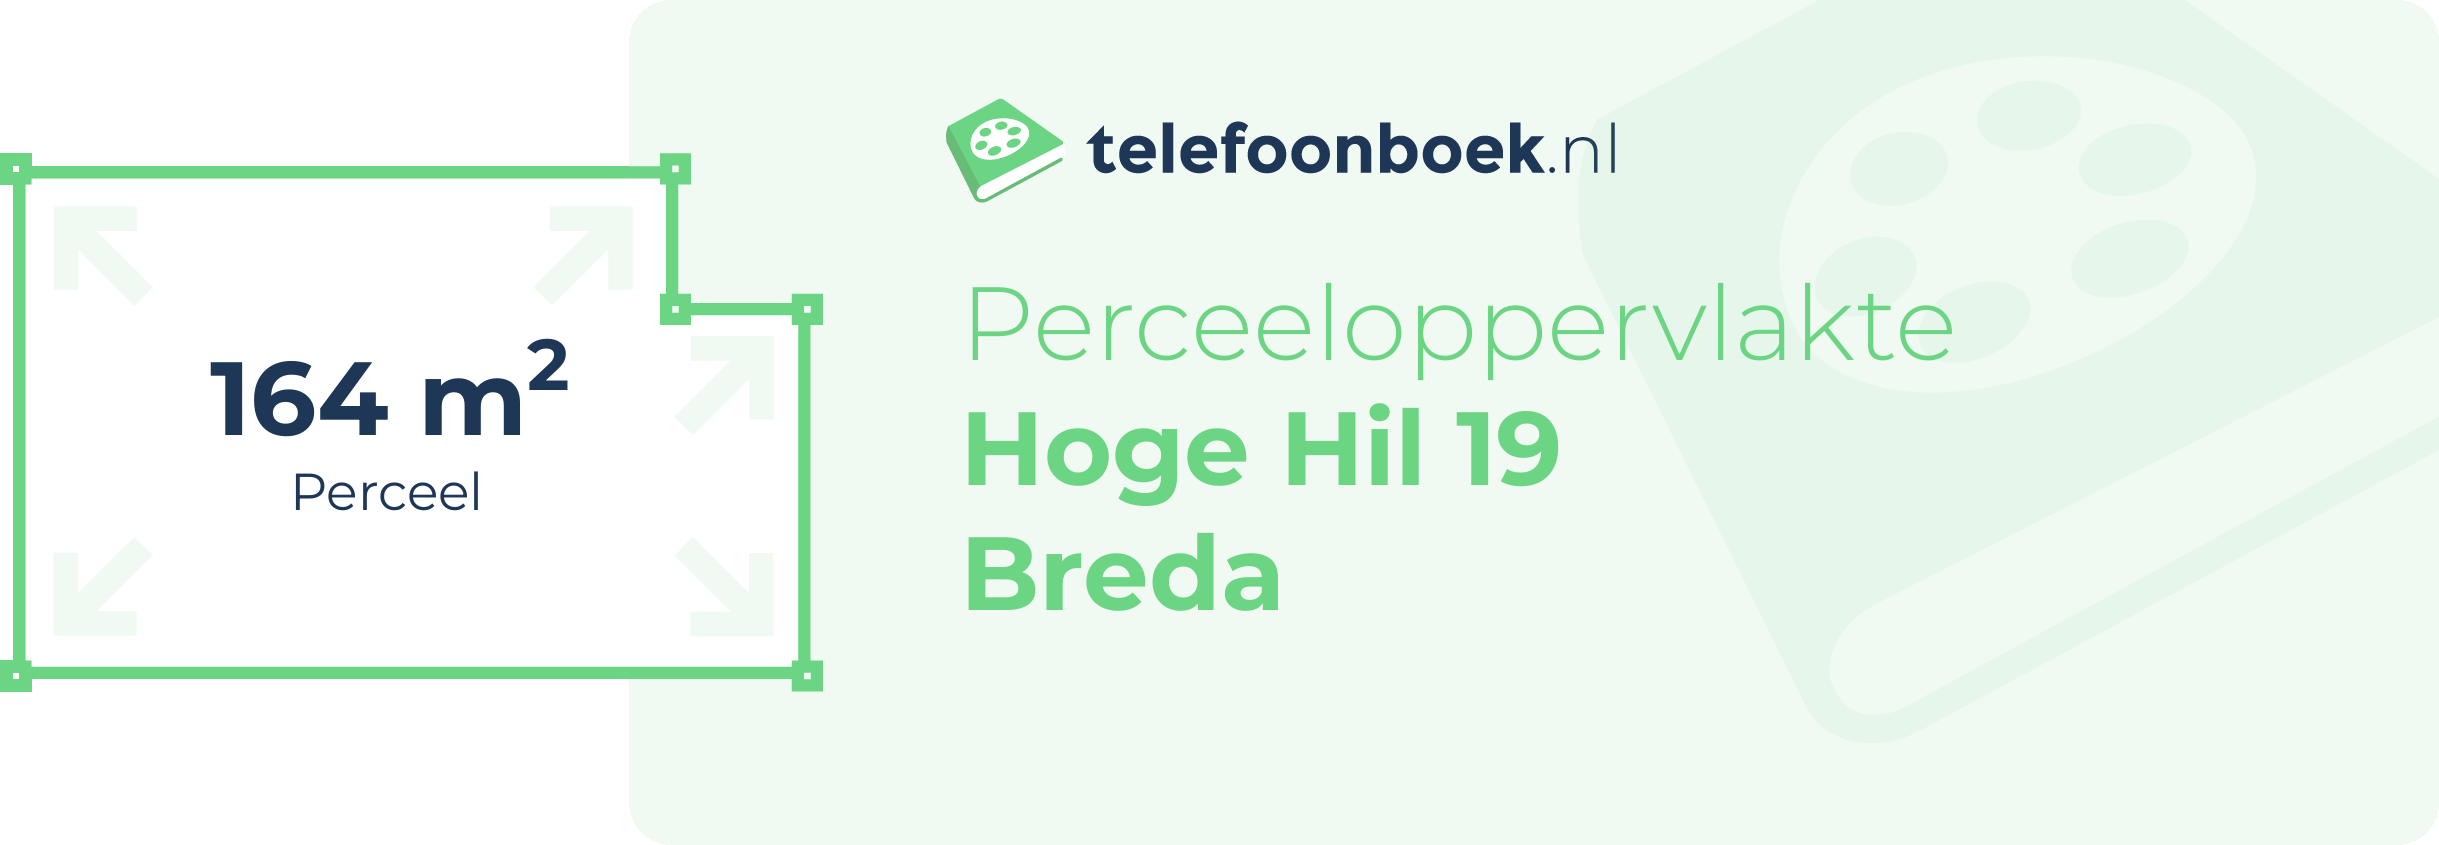 Perceeloppervlakte Hoge Hil 19 Breda